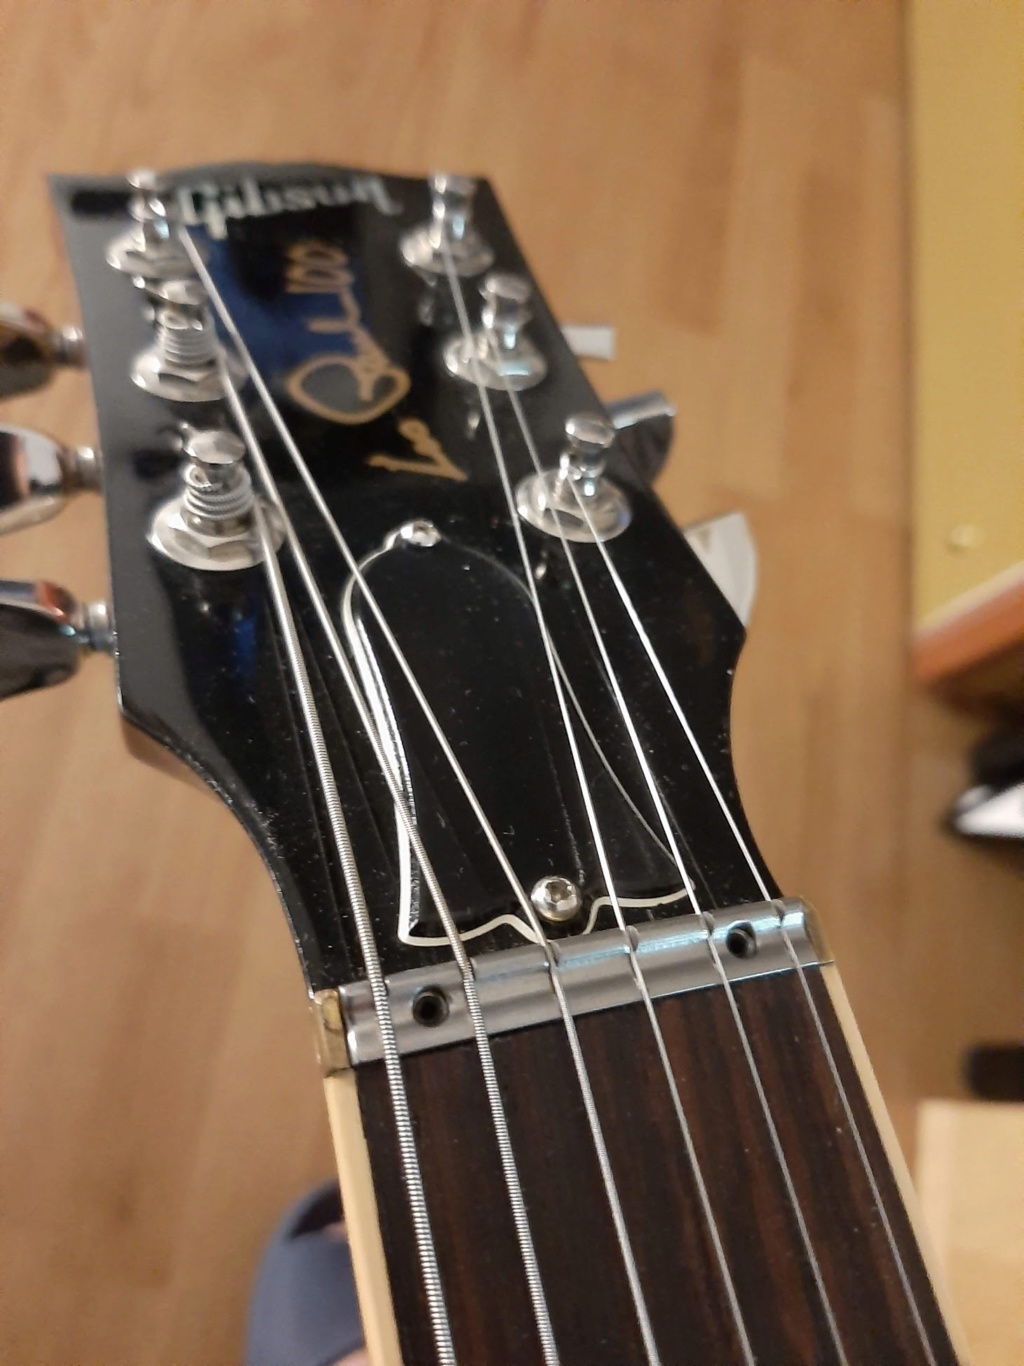 Acheter Règle de cou de guitare Luthier, outils de mesure 24.5